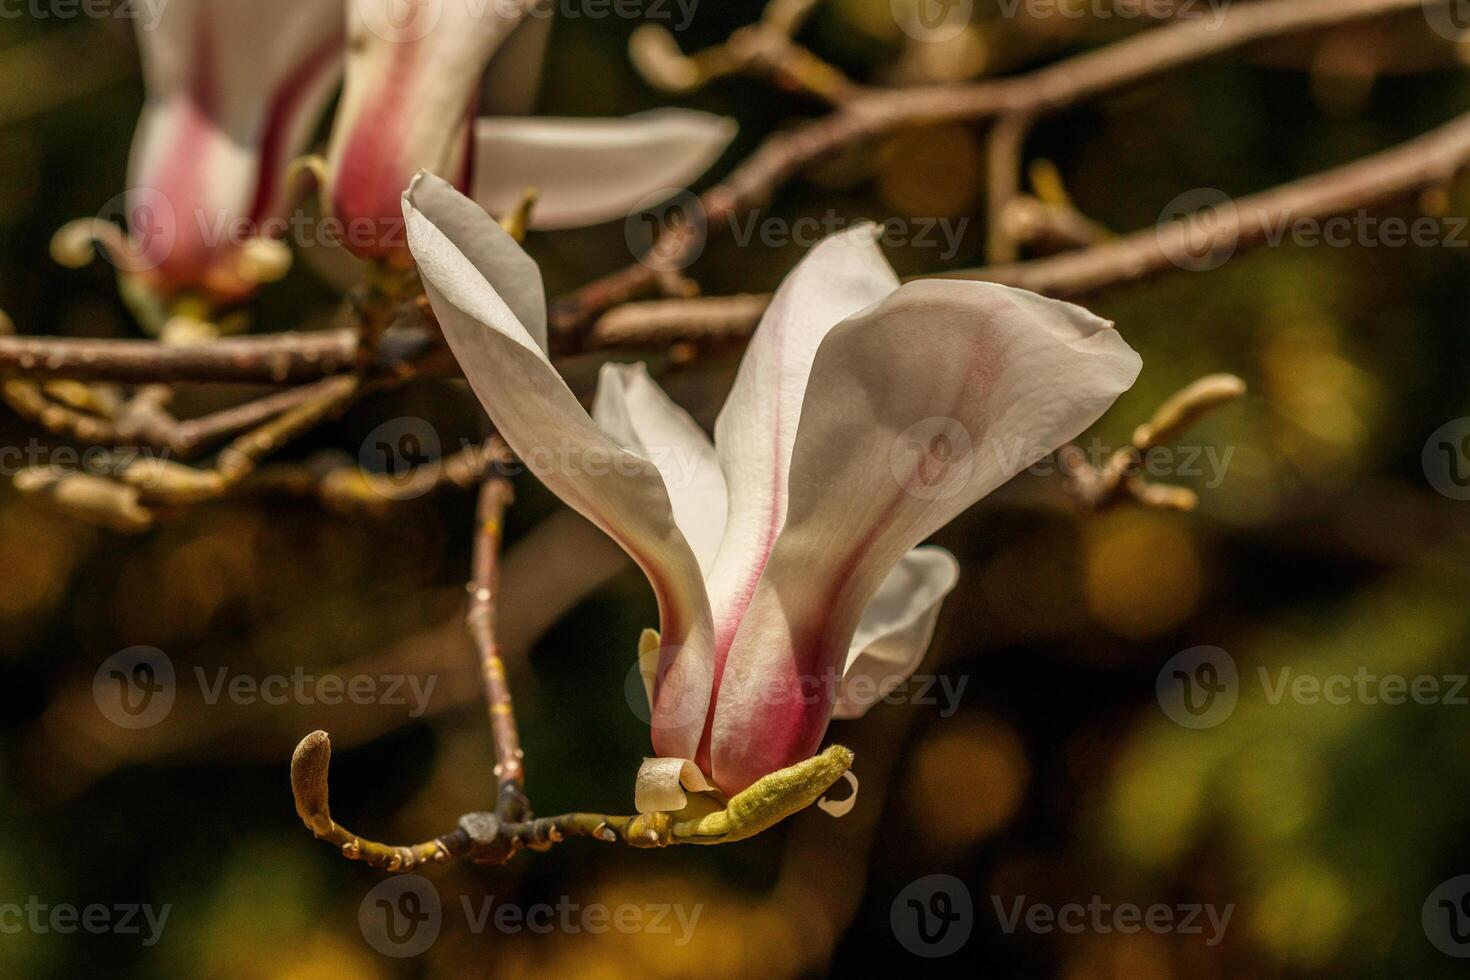 magnifique magnolia fleurs avec l'eau gouttelettes photo